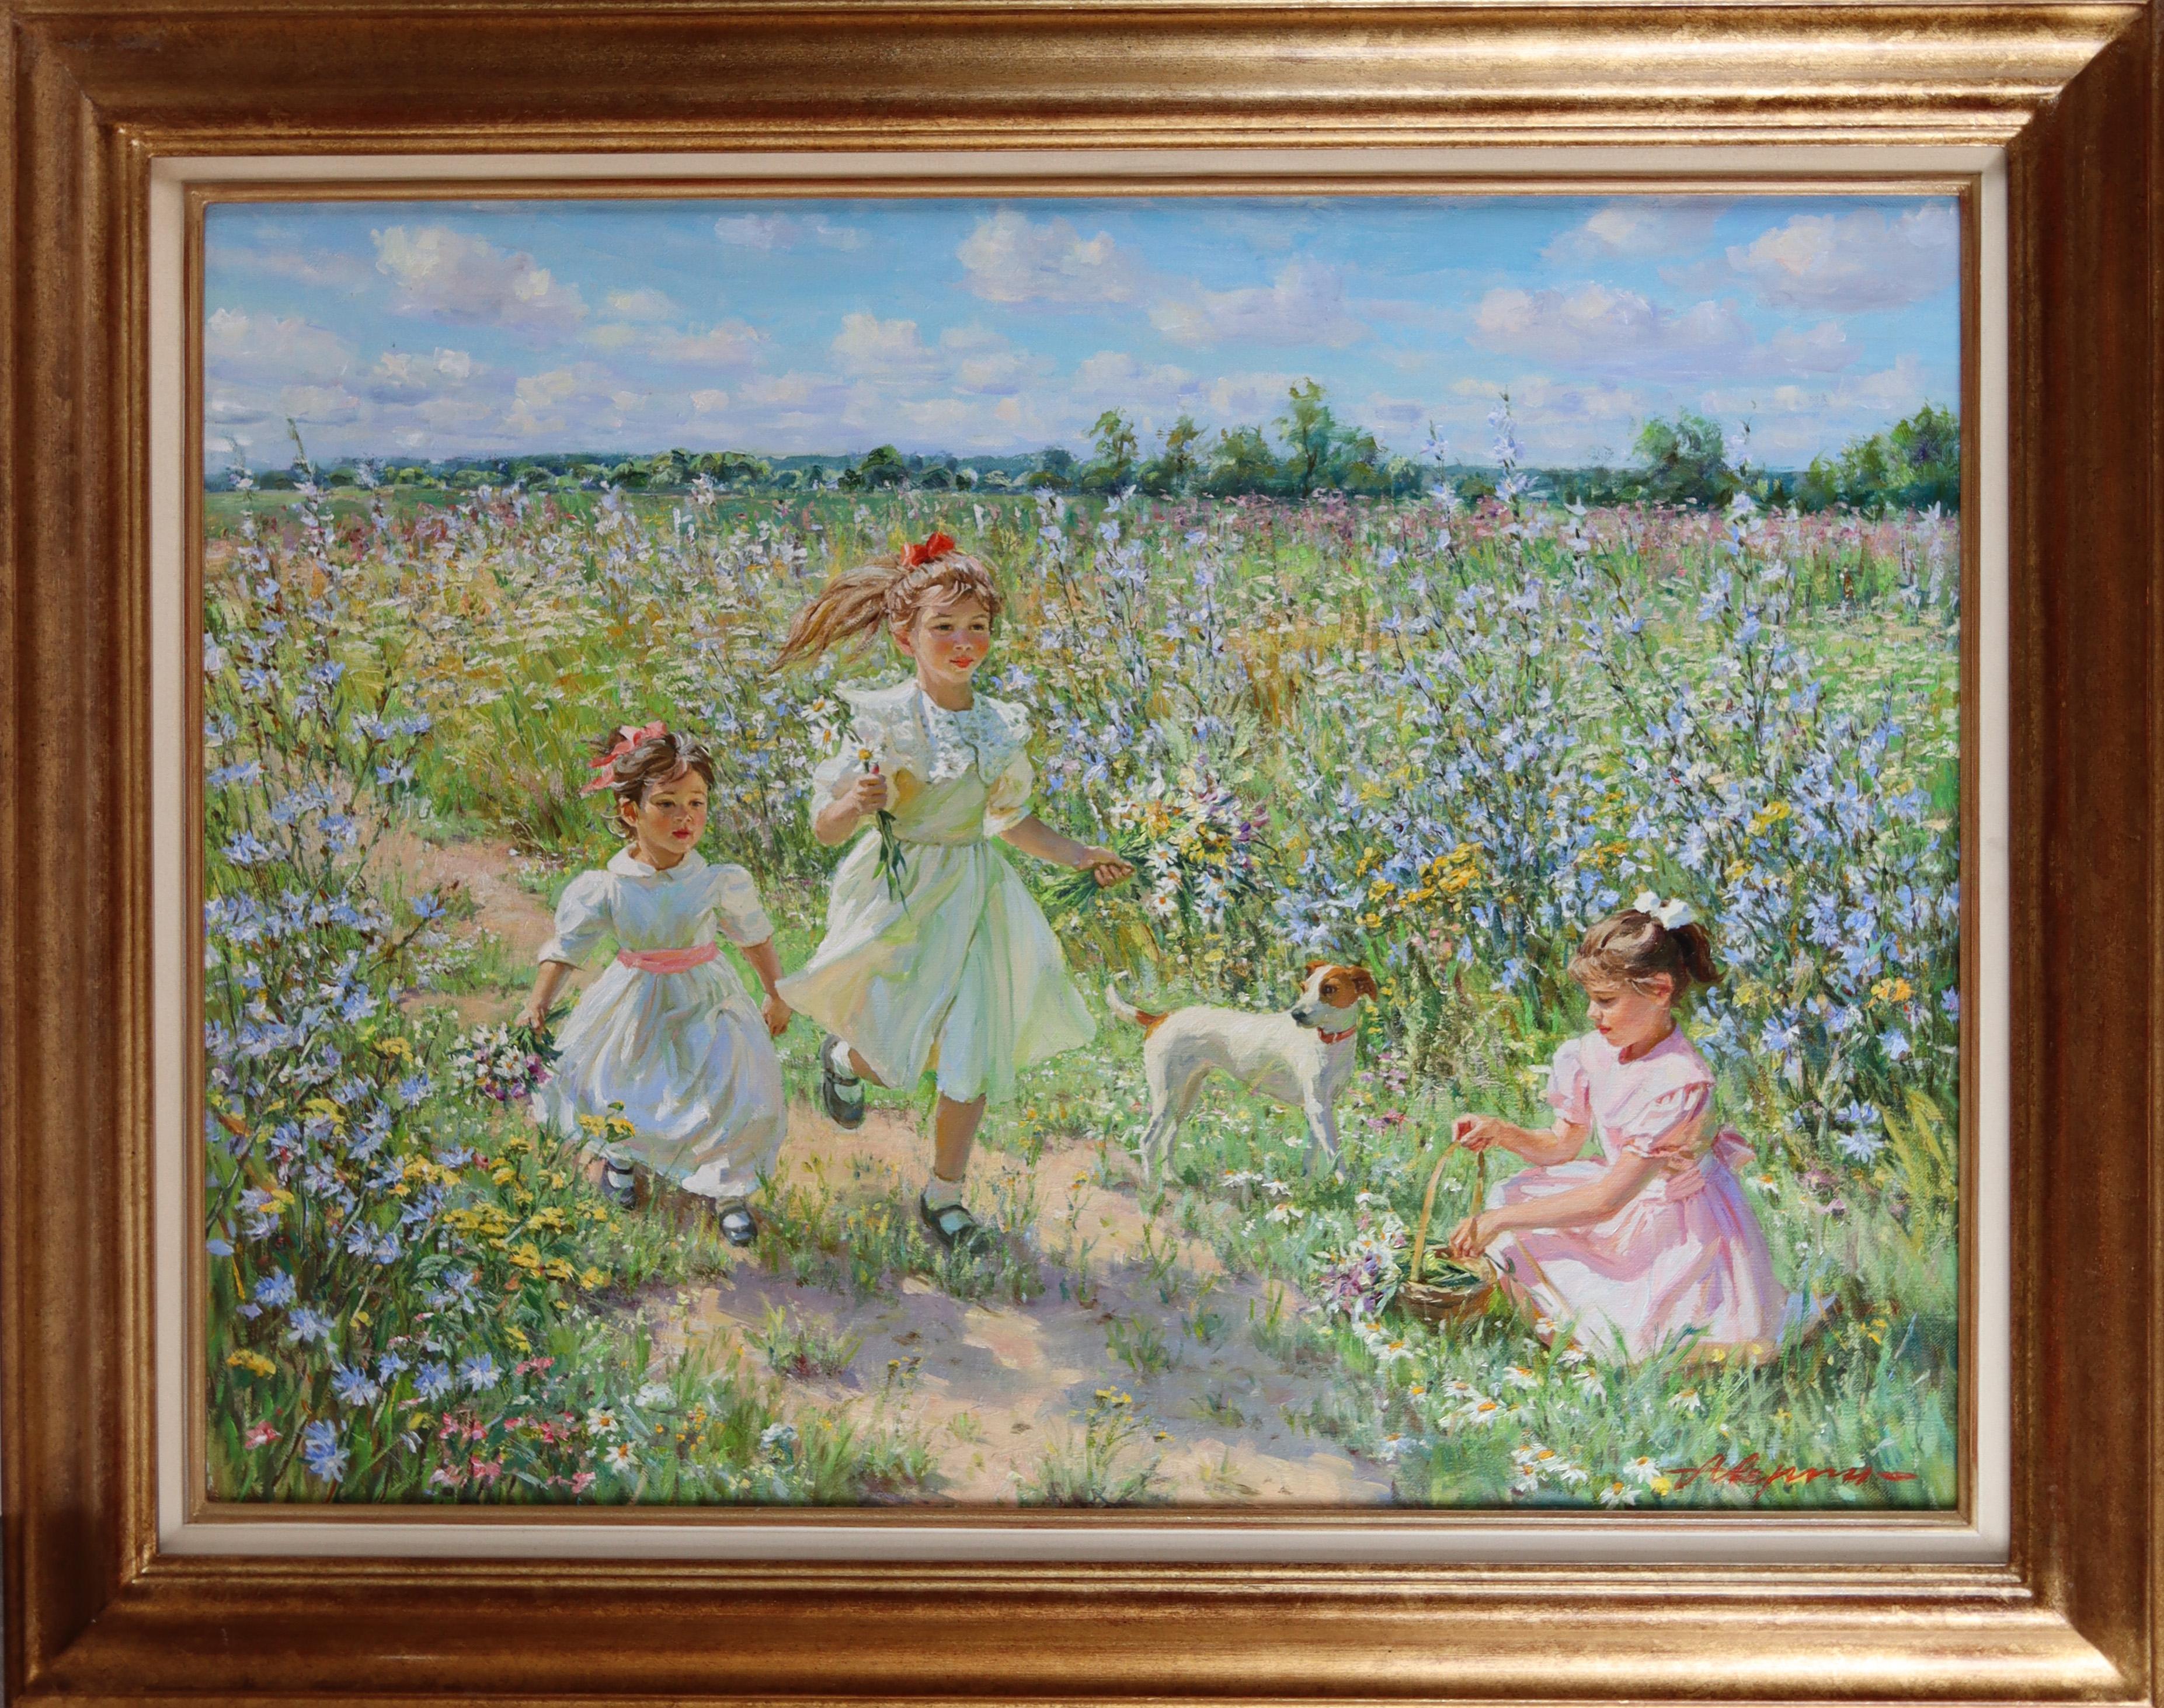 Junge Mädchen in einer Wildblumenmauer mit einem Jack Russell spielen – Painting von Alexander Averin